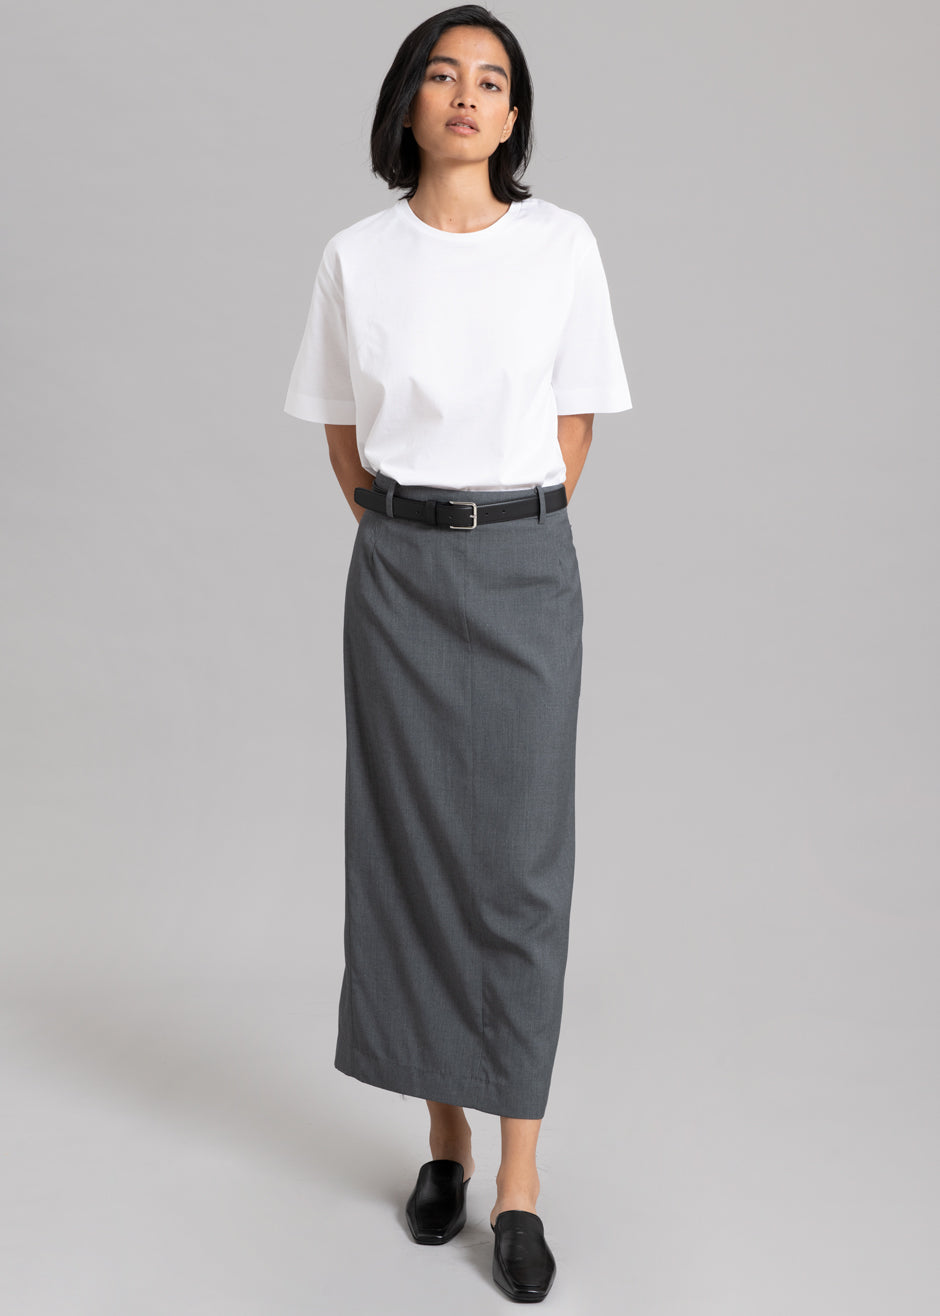 Ribbed Long Pencil Skirt